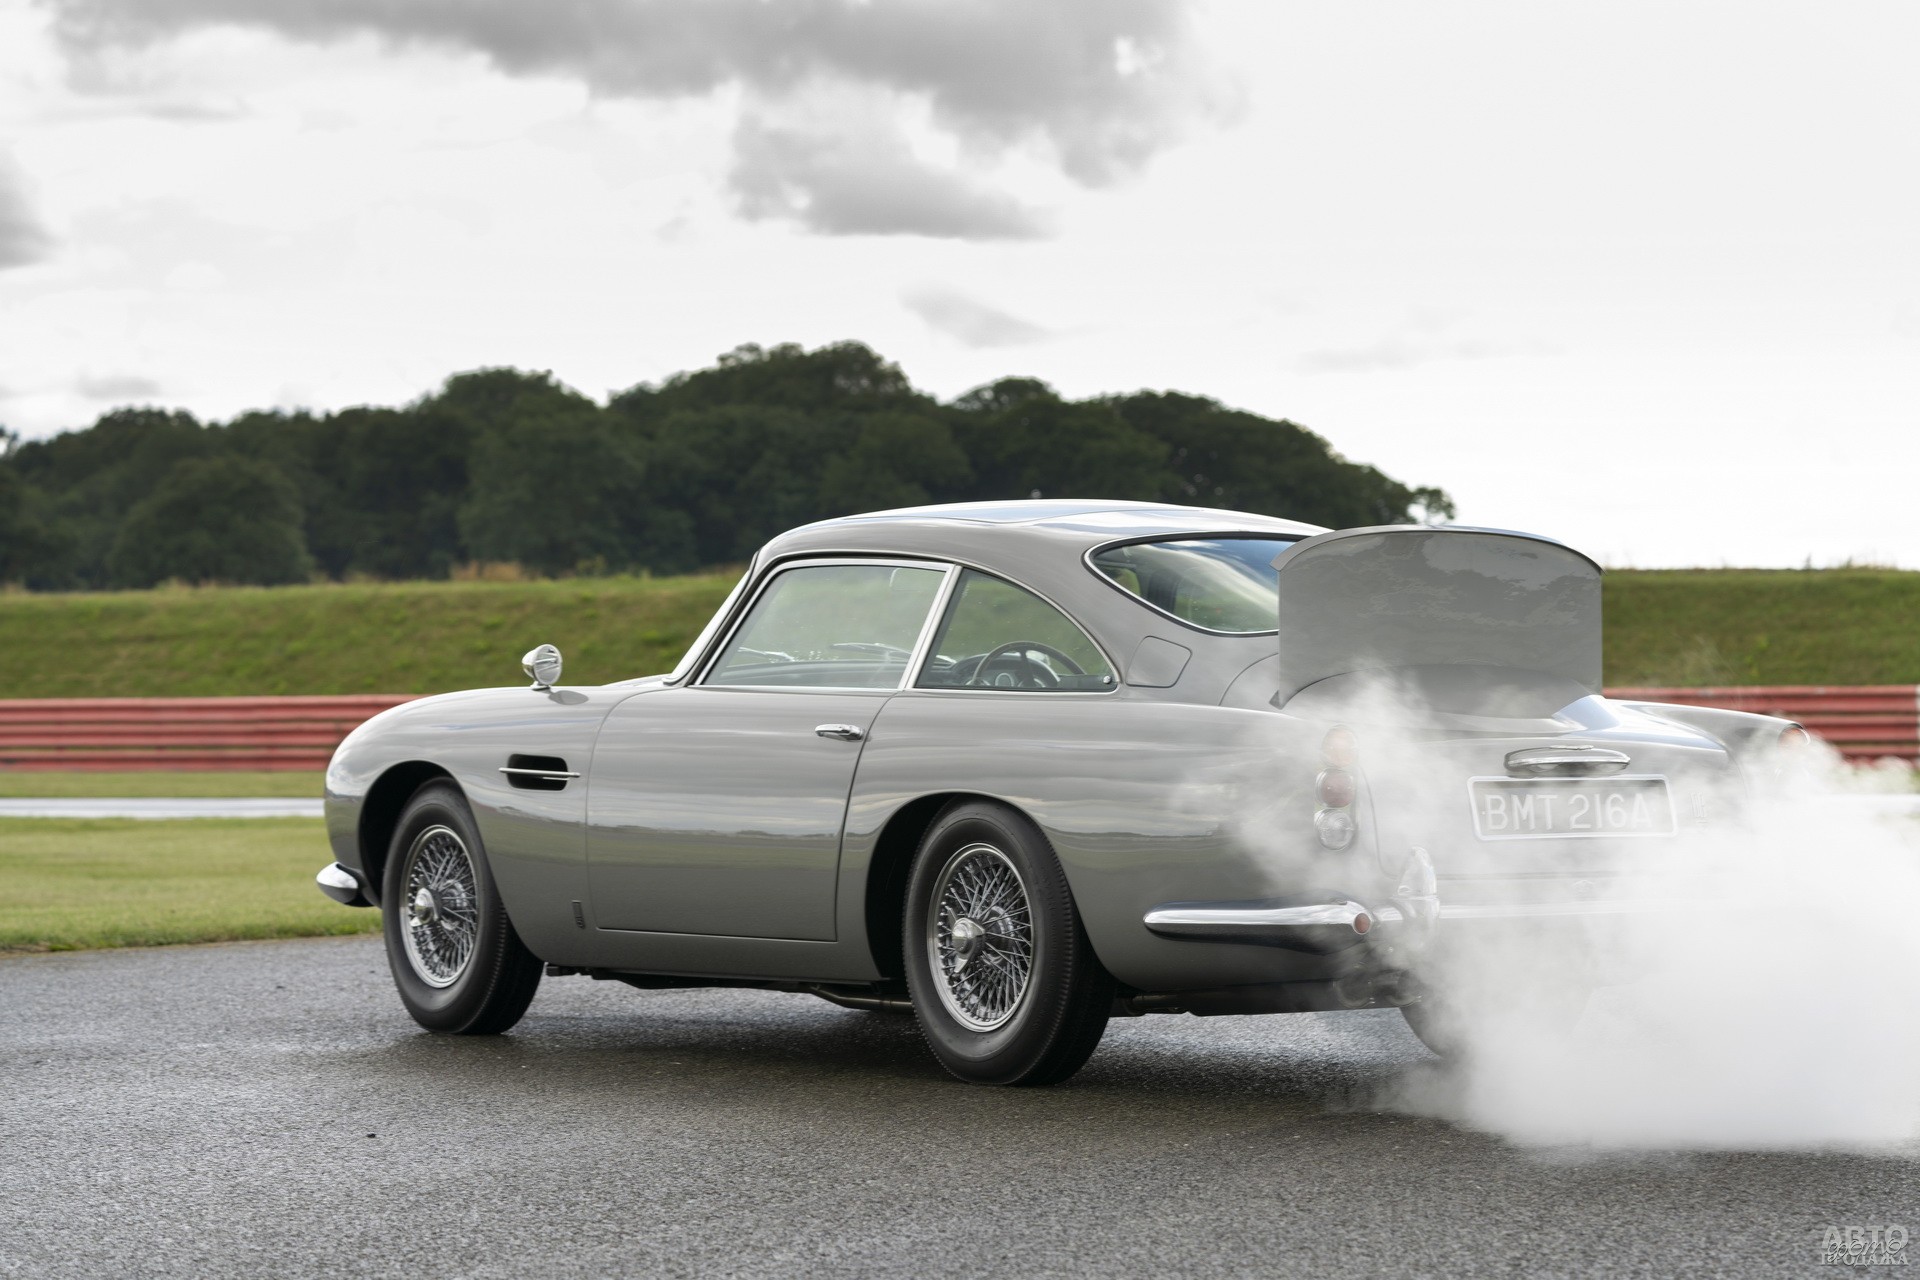 Aston Martin DB5 оснащен дымовой завесой, пулеметами в бамперах и пуленепробиваемым щитом сзади